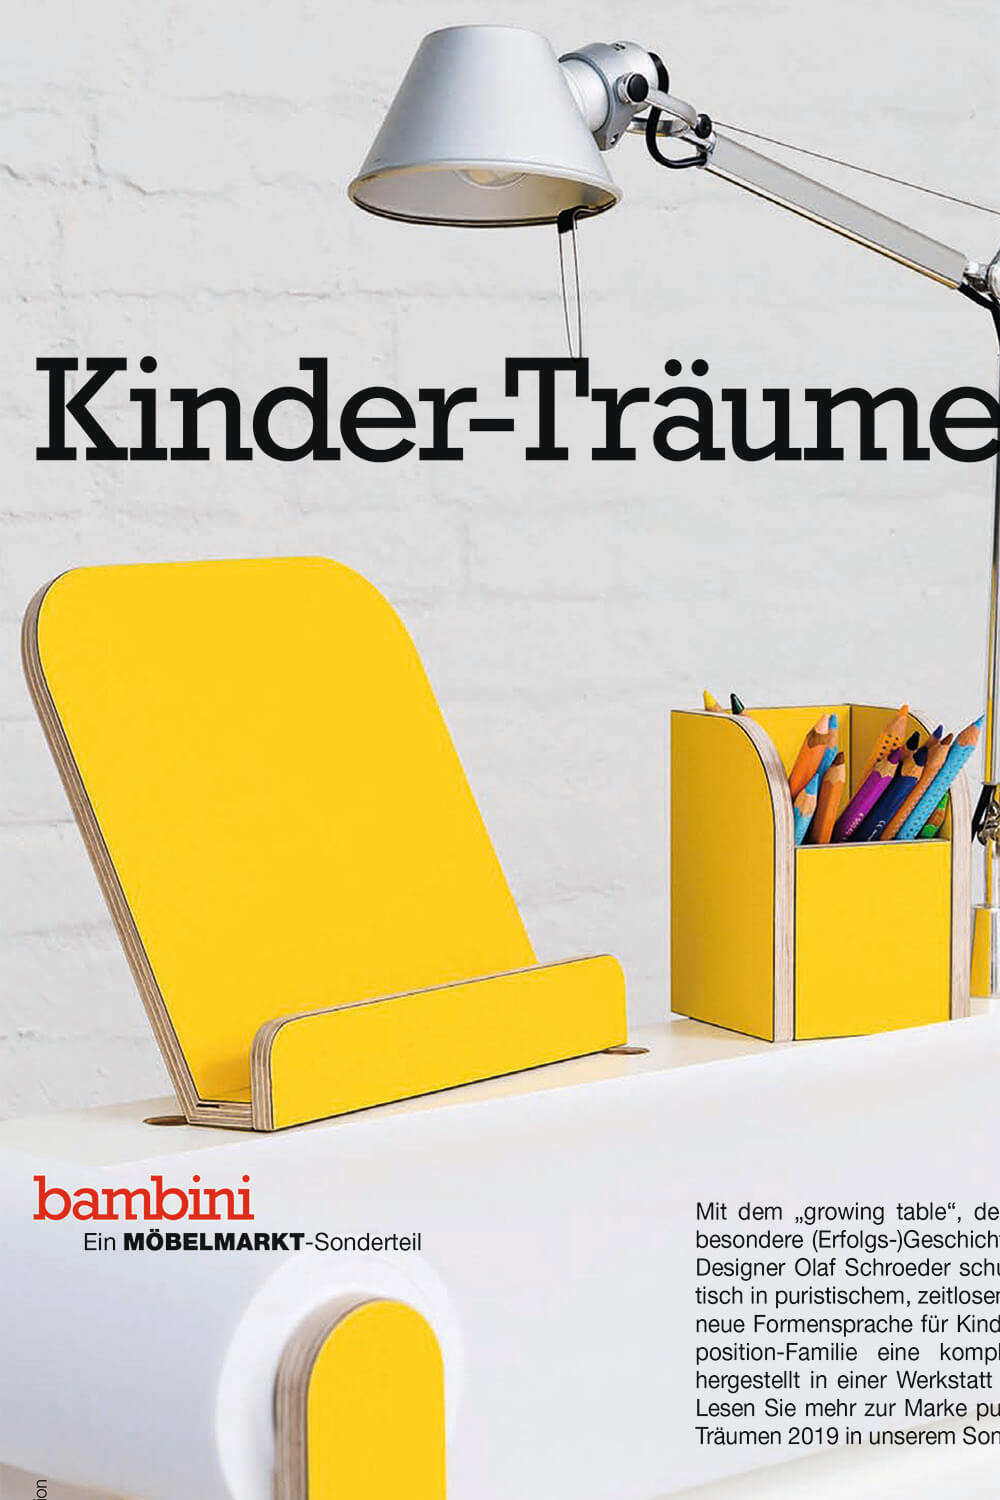 Auschnitt vom Titelbild von Magazin Bambini Möbelmarkt mit einem Bild vom growing table Schreibtisch